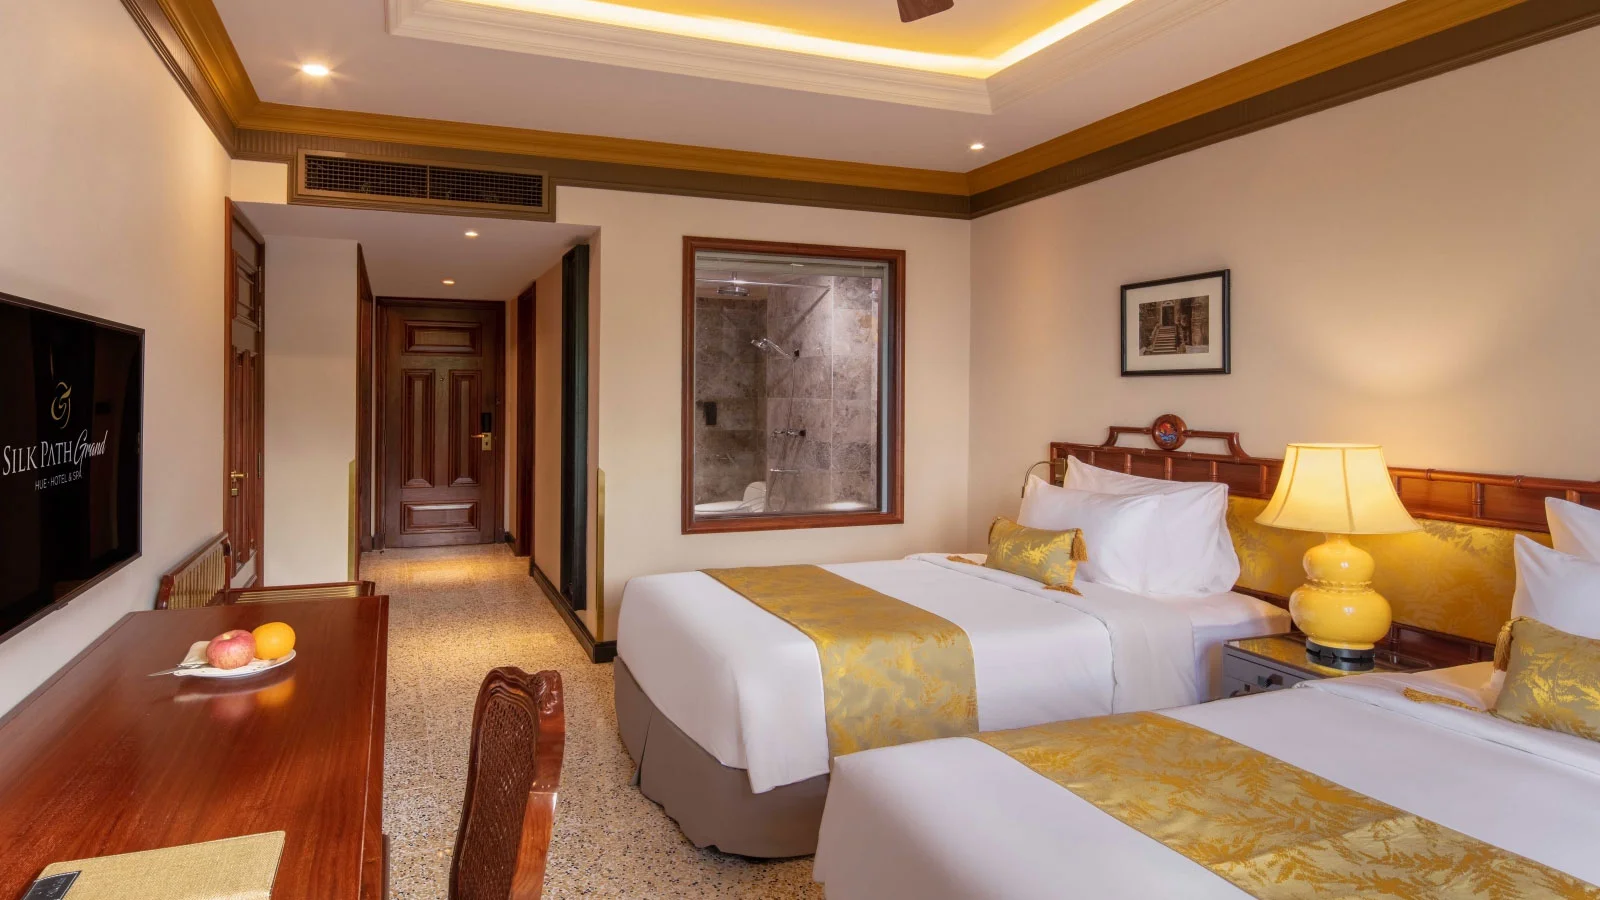 Combo khách sạn 5 sao Silk Path Grand Hotel Huế 3 ngày 2 đêm cùng vé máy bay từ Hà Nội